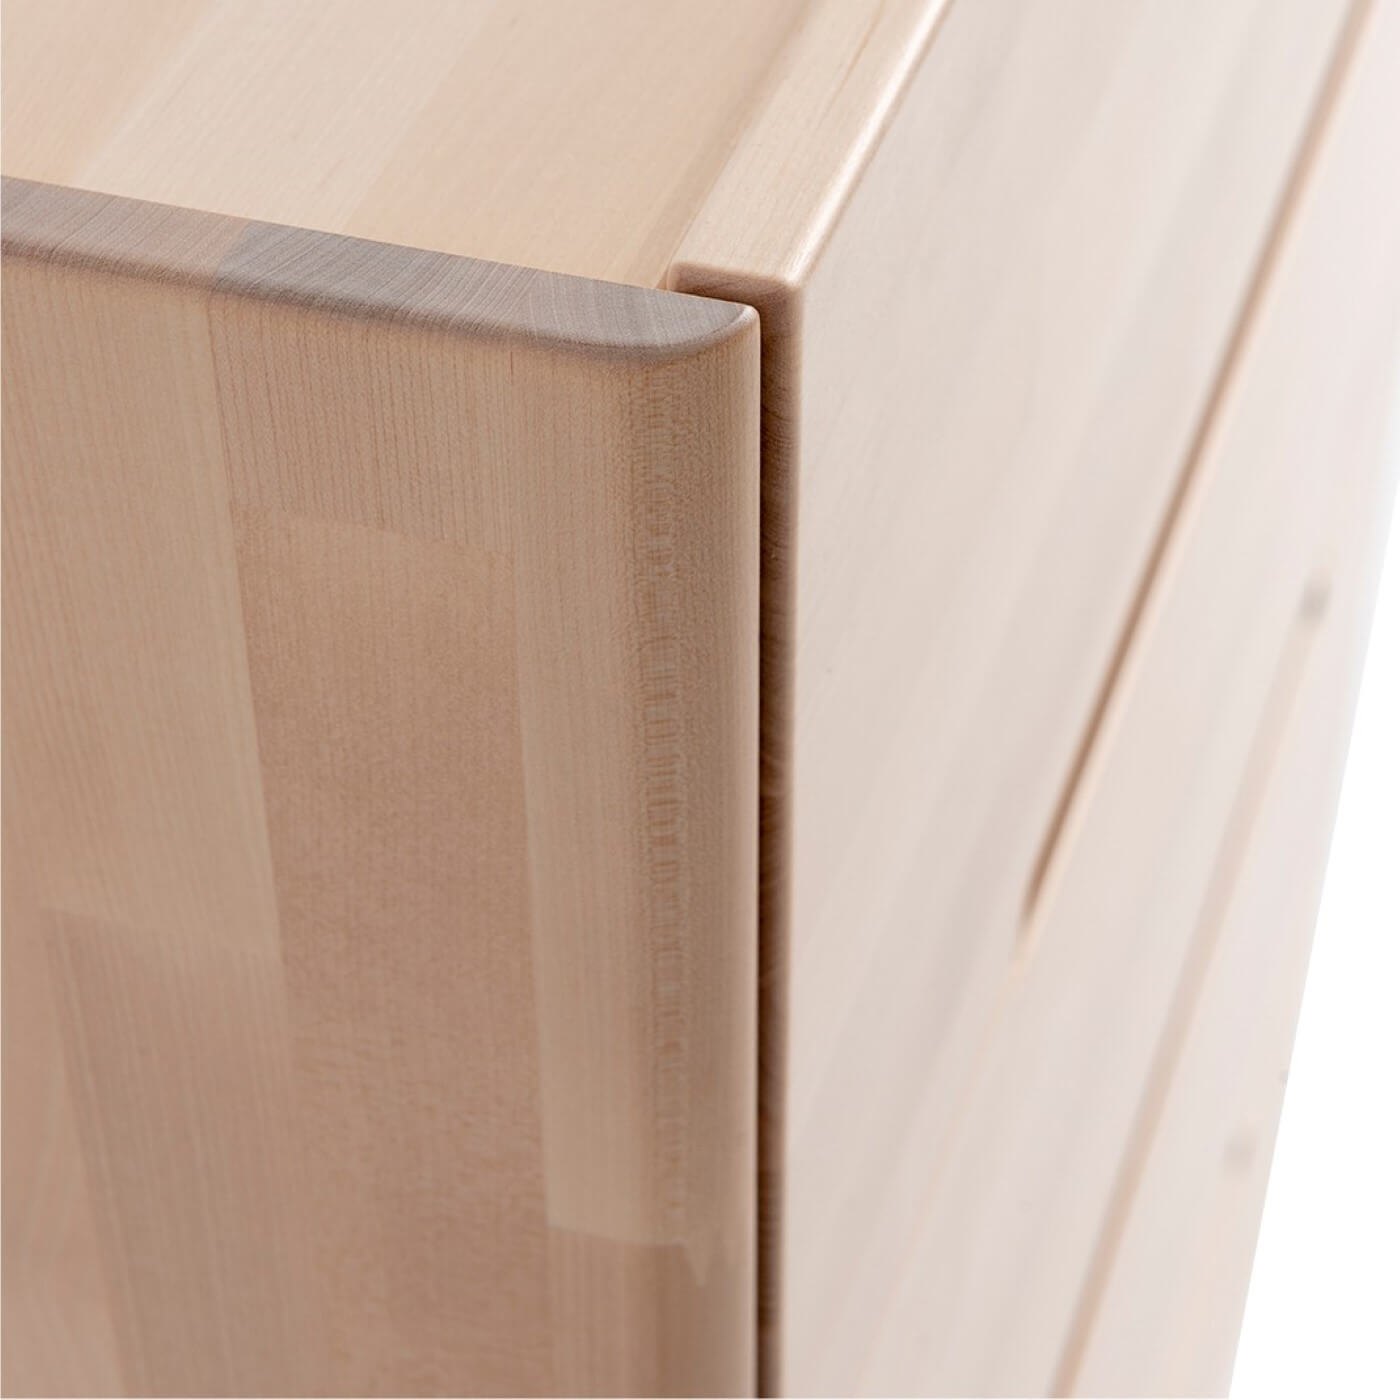 Komoda design LENNU. Widok z boku na nowoczesne szuflady bez wystających uchwytów z pełnego drewna brzozy skandynawskiej